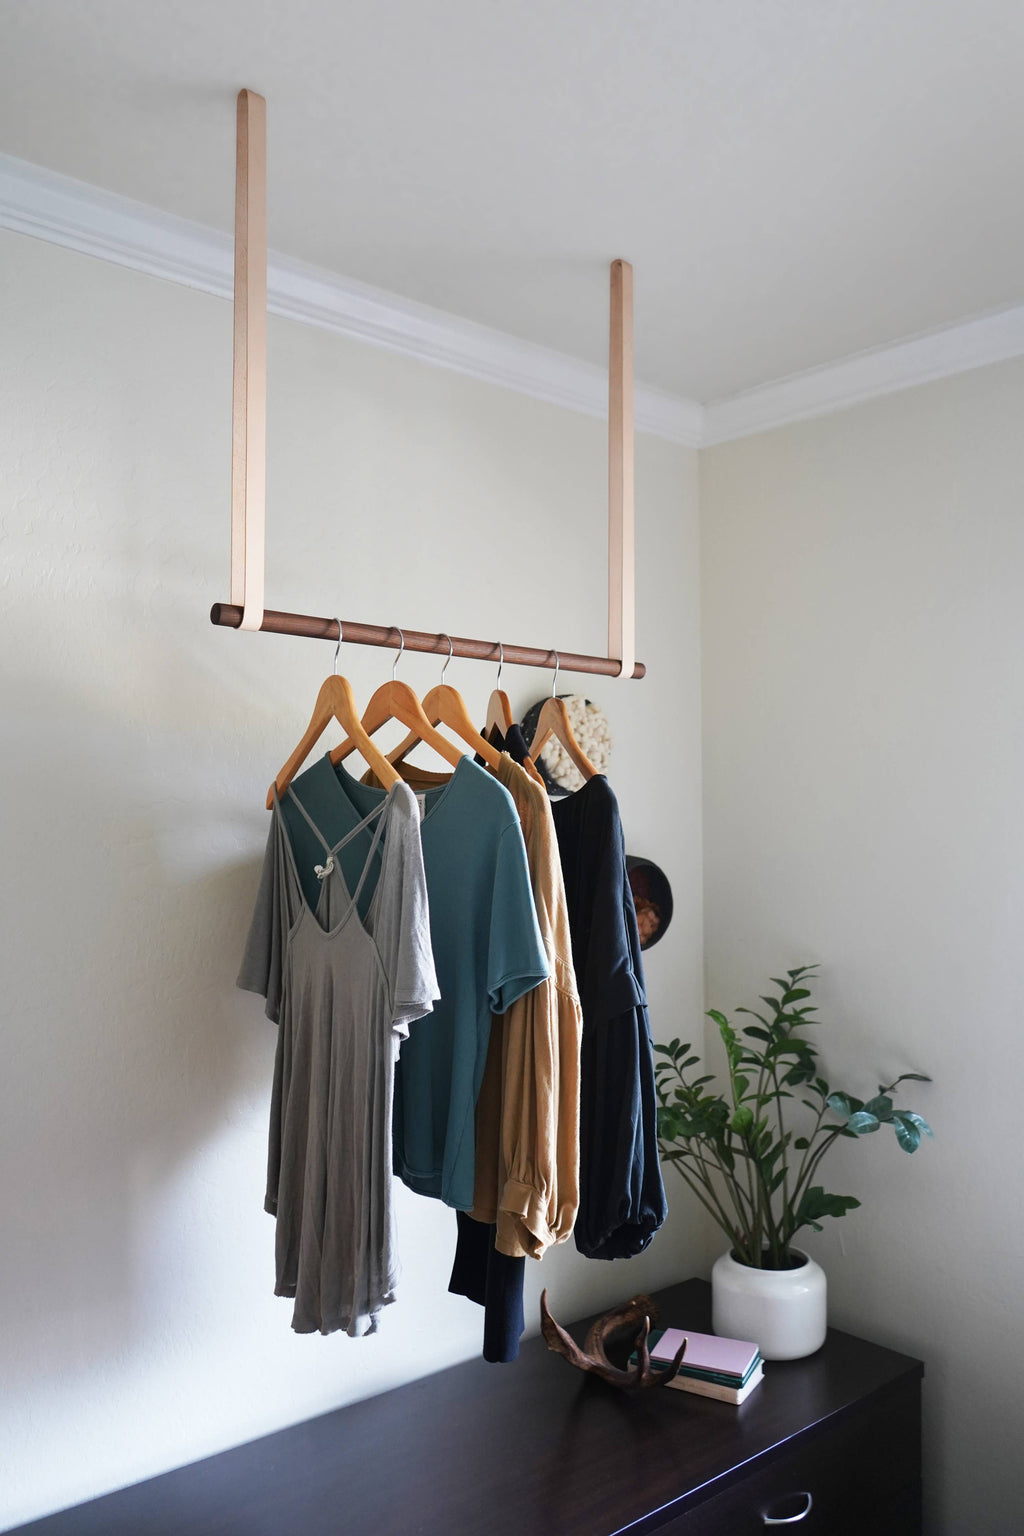 Keyaiira - Garment Rack: Veg Tan / 5" Long / Birch - 36"